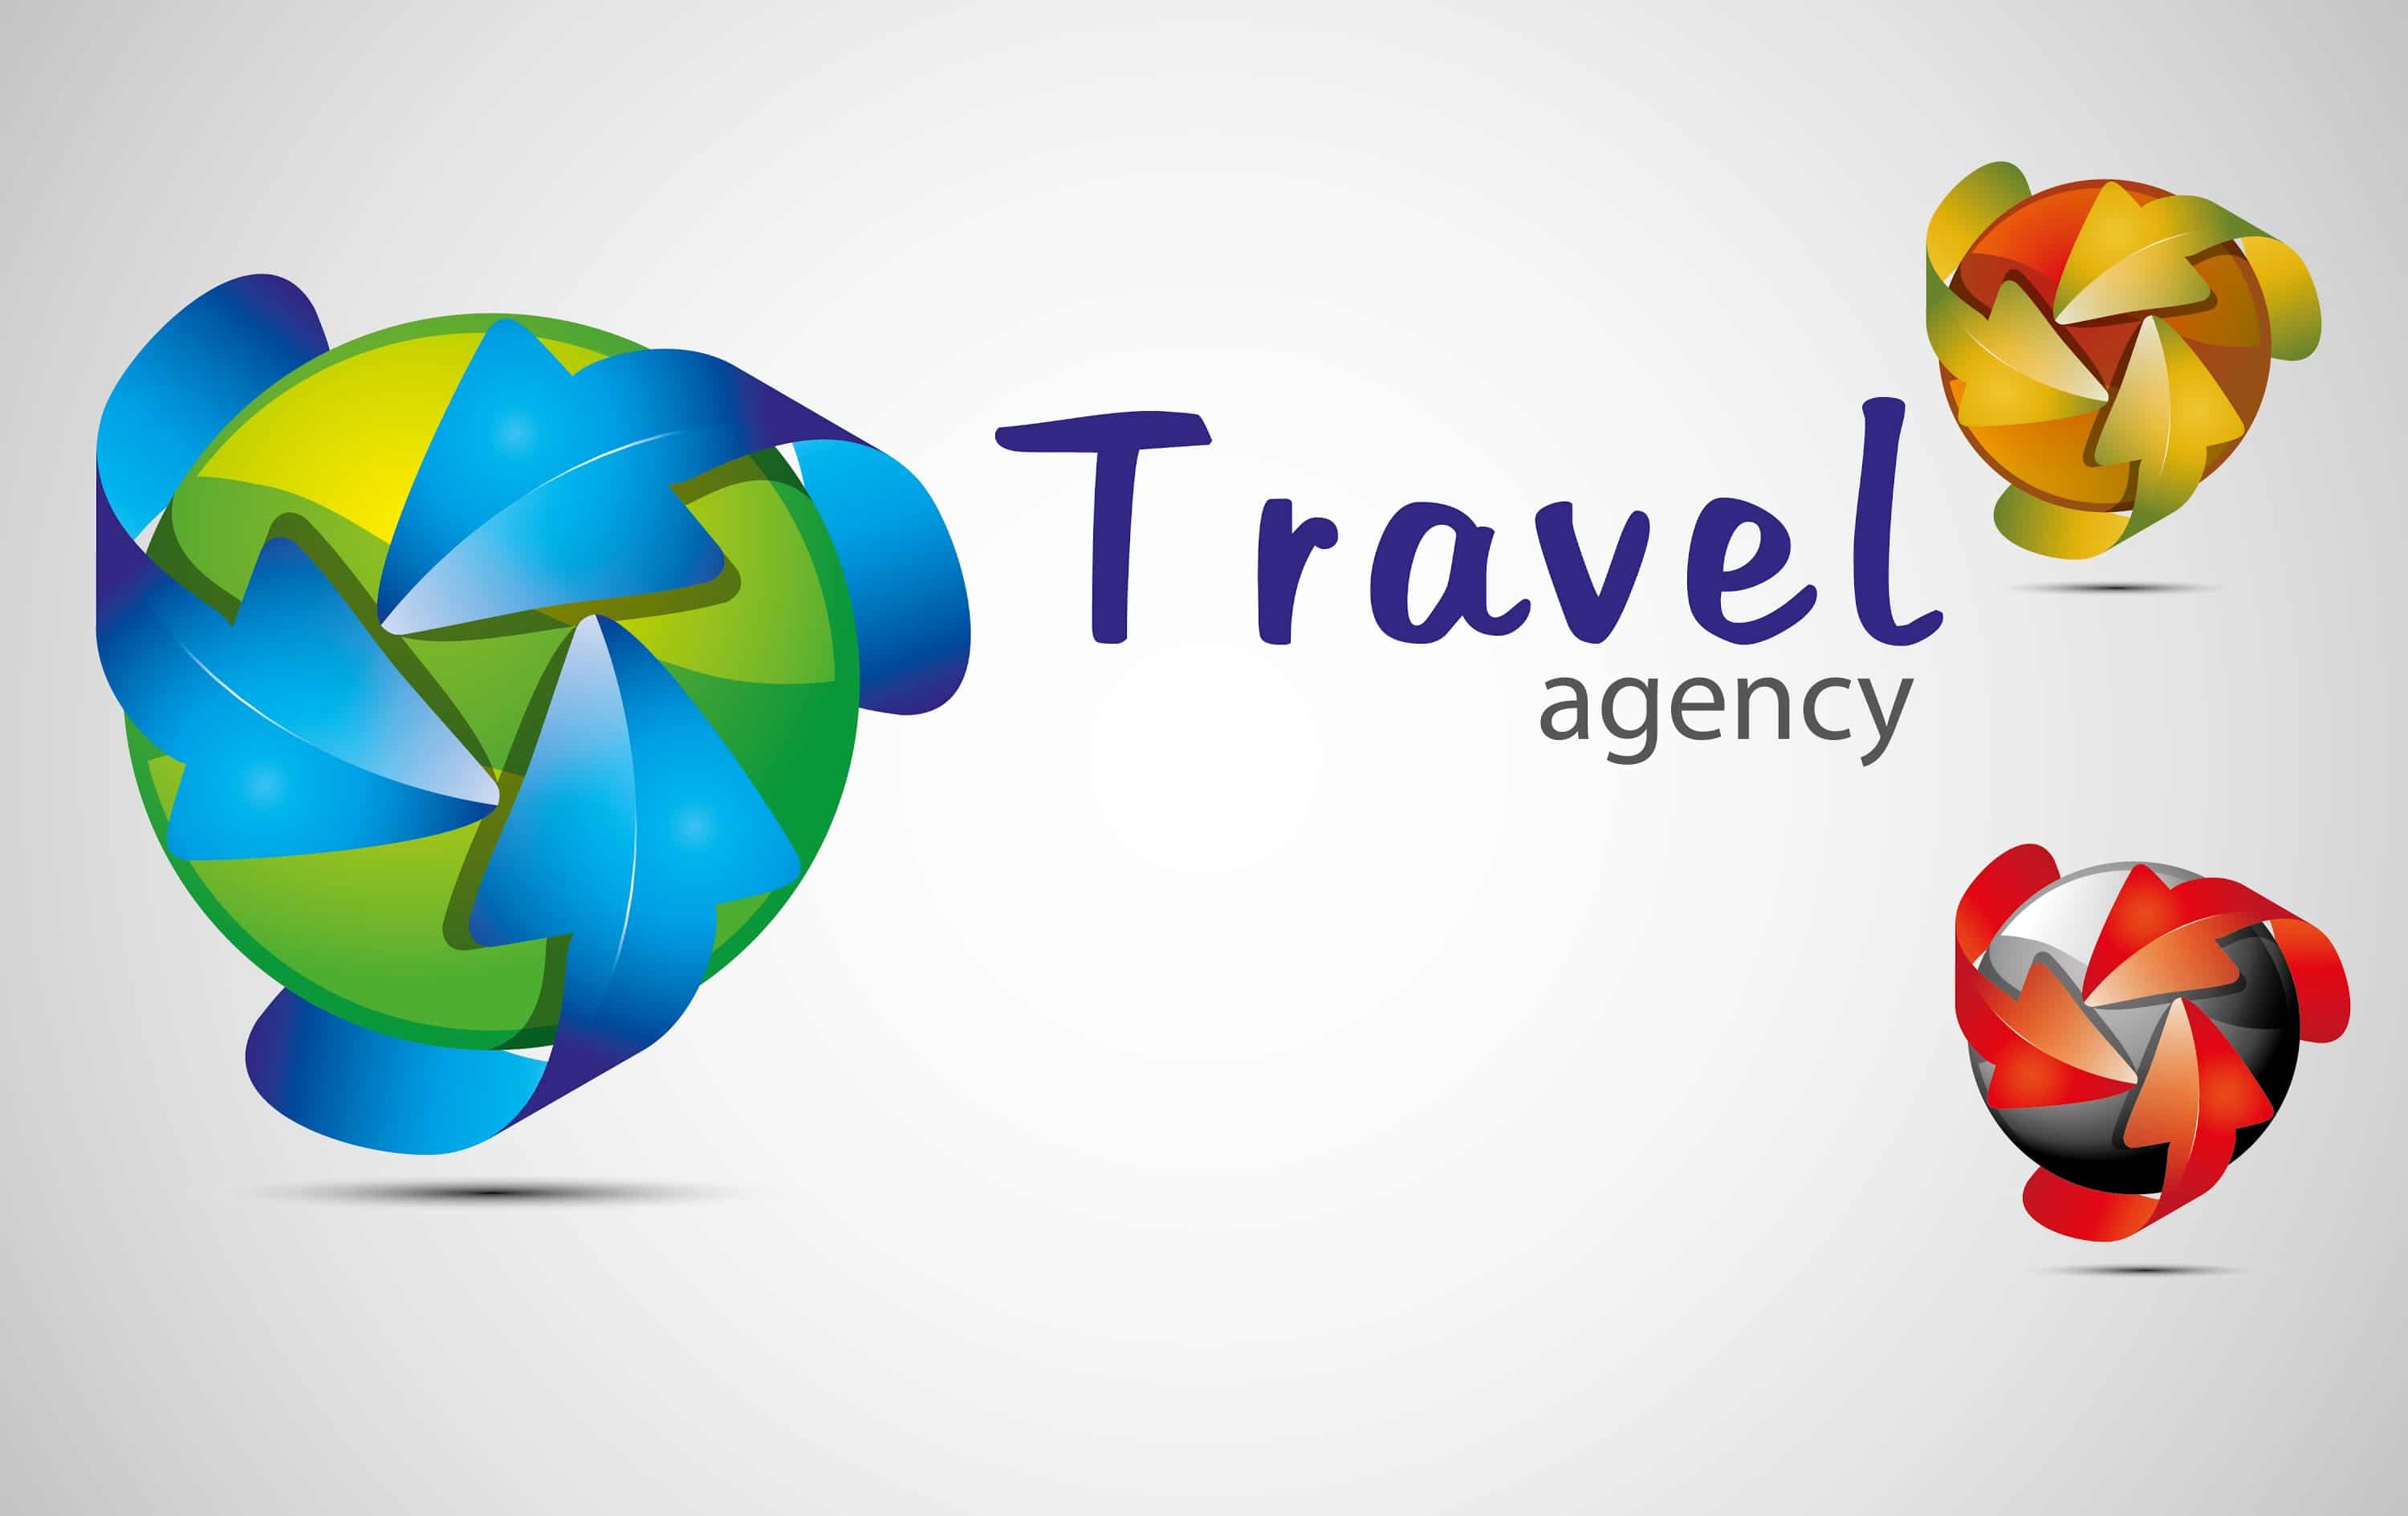 تحميل كتاب حسابات وكالات السفر وشركات السياحة pdf